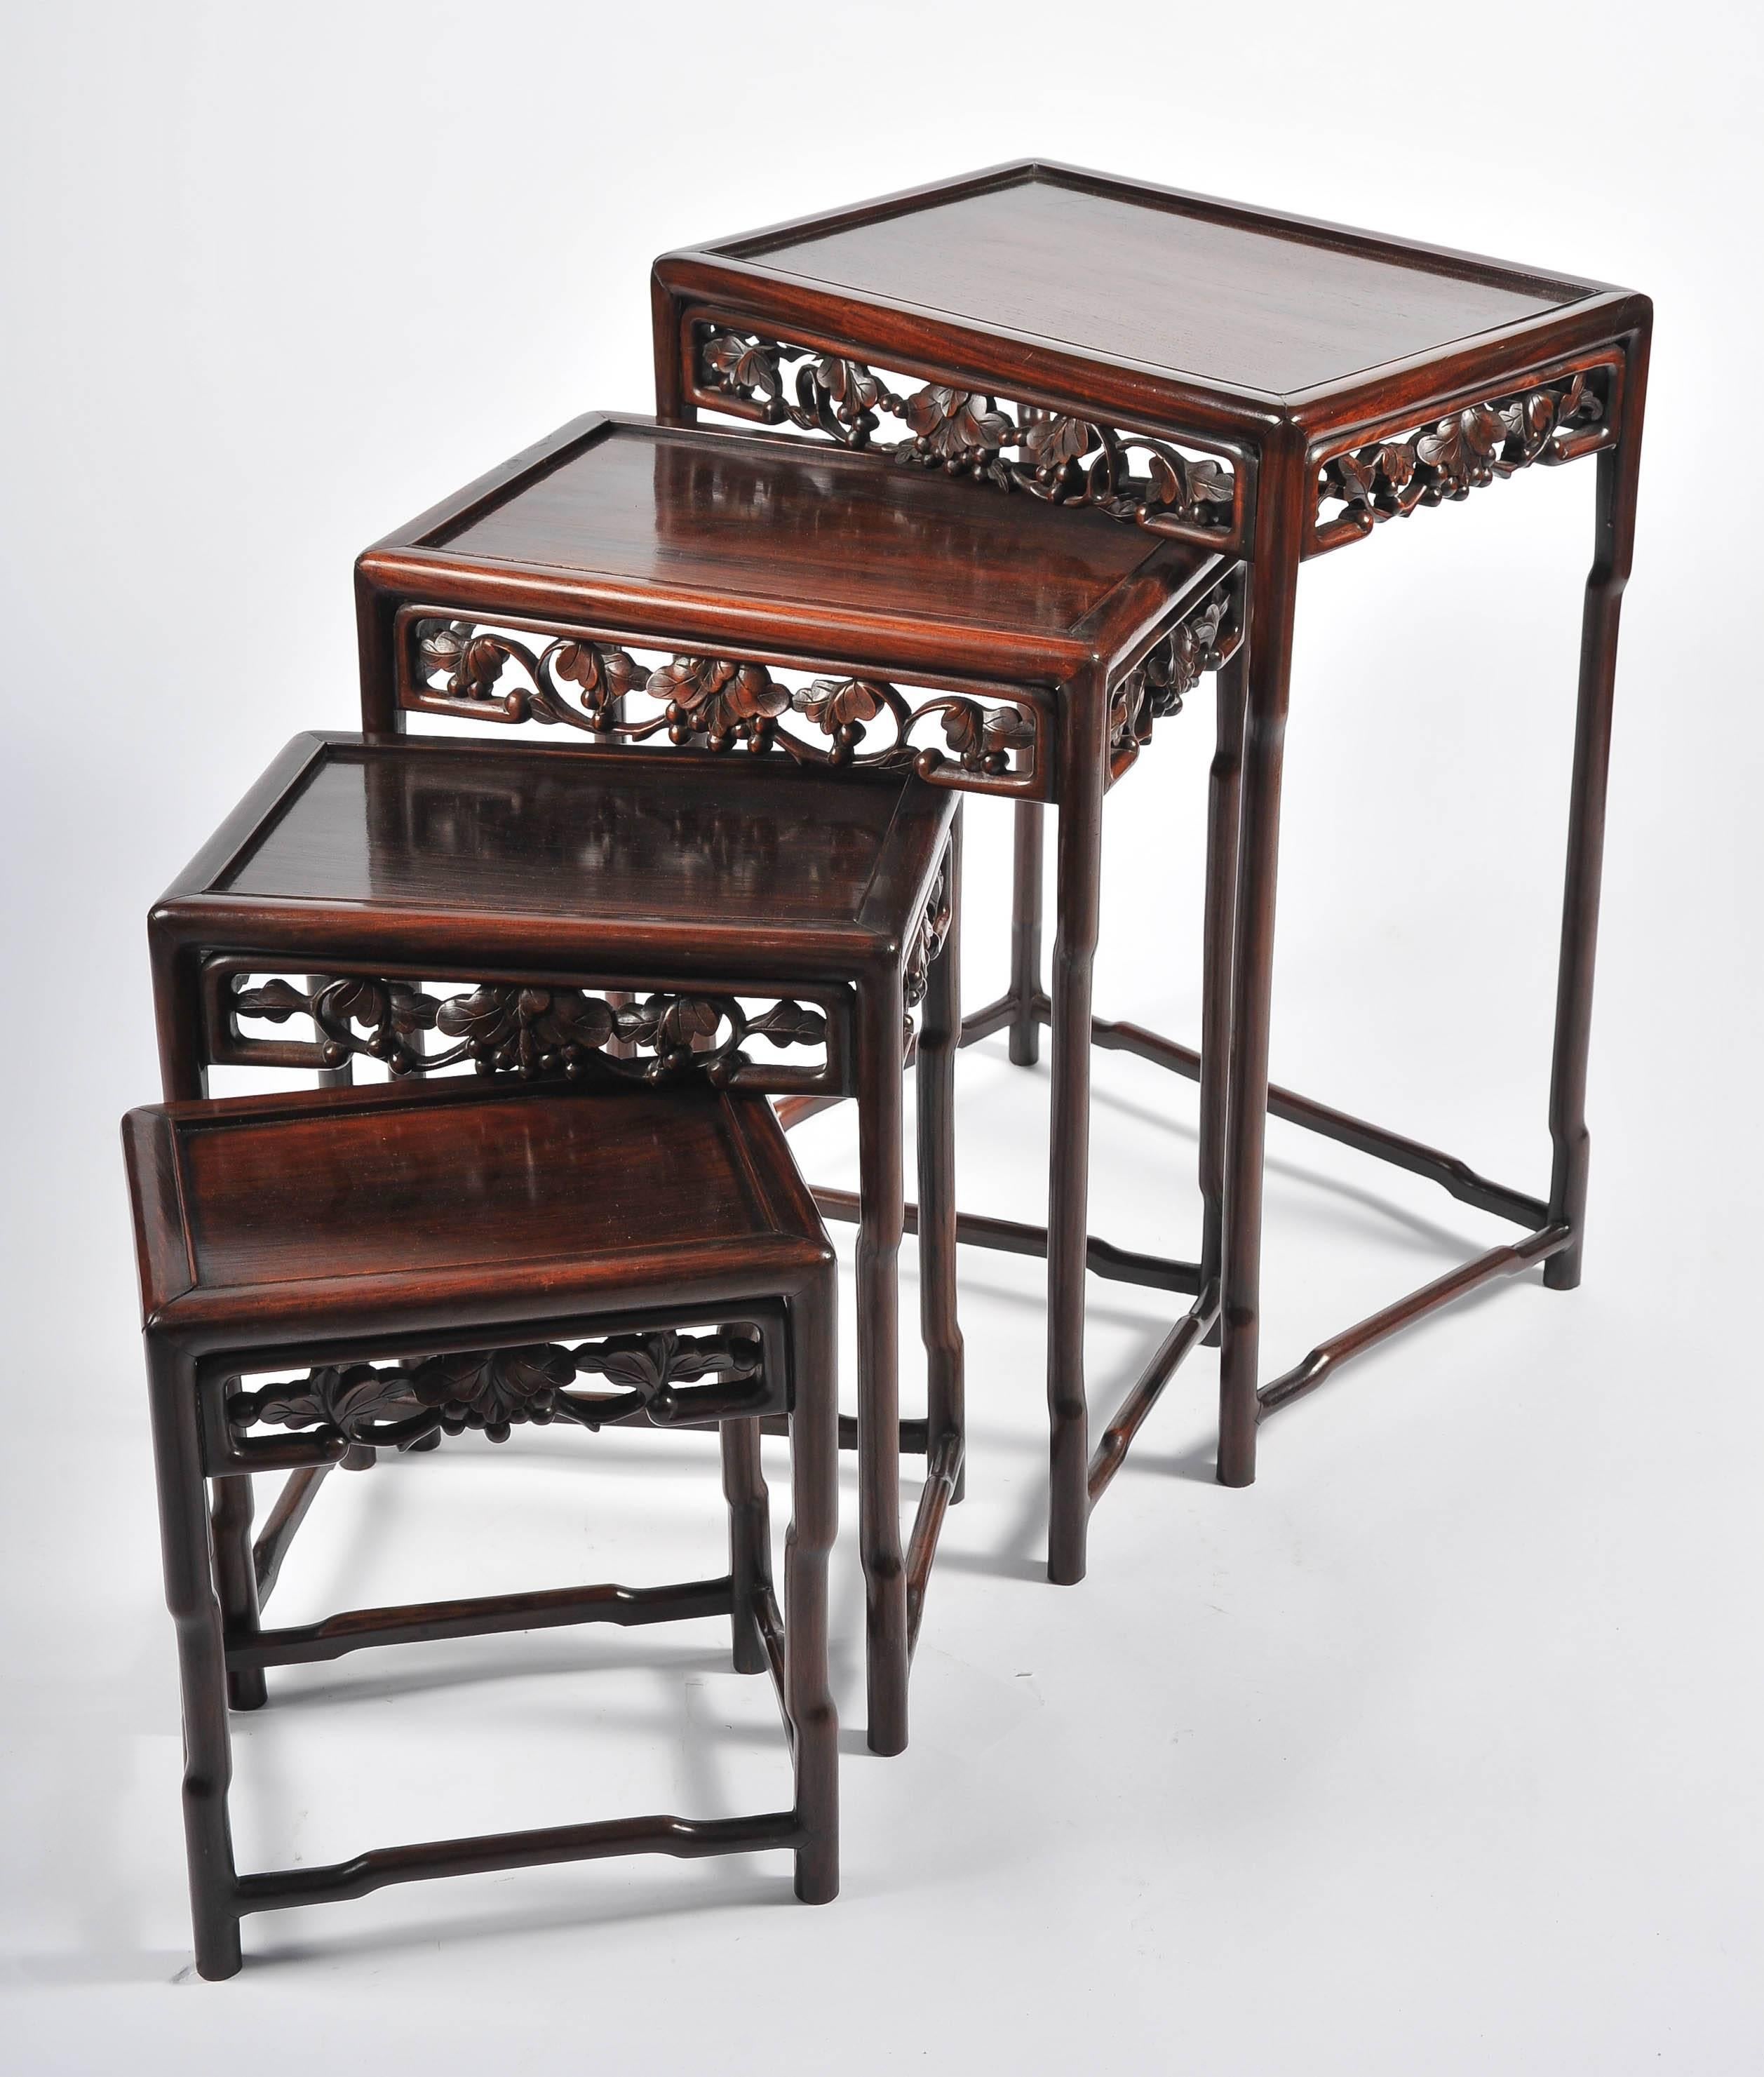 Un ensemble de quatre tables chinoises en bois dur de bonne qualité, datant du 19e siècle. La frise est ornée d'un décor de feuillage sculpté.